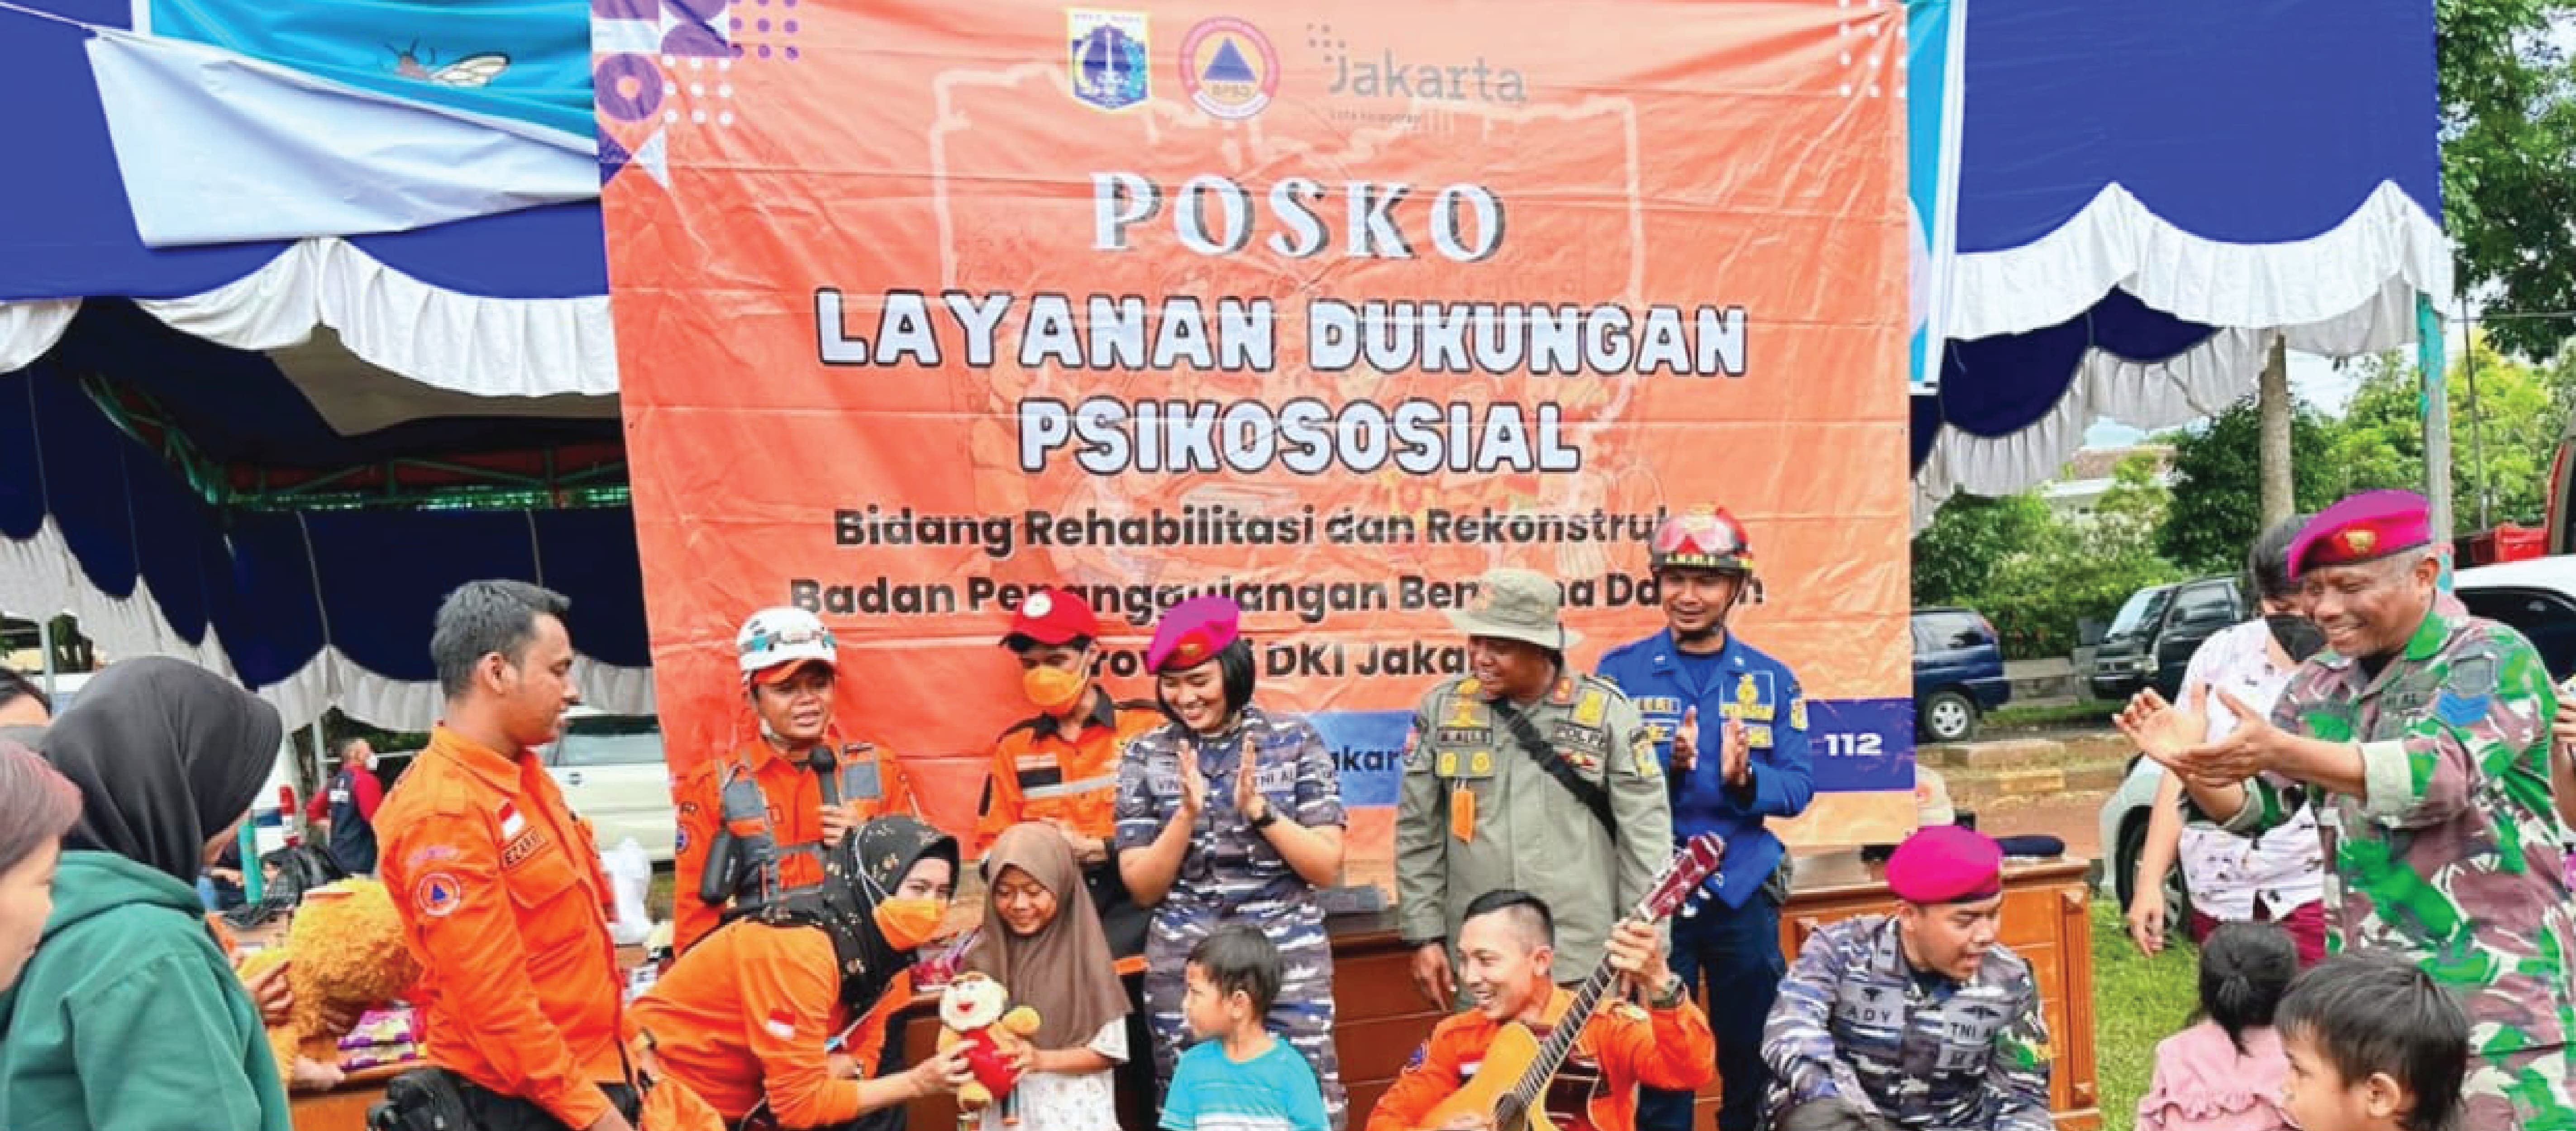 Satgas Kolaborasi DKI Jakarta Memberikan Layanan Dukungan Psikososial (LDP) bagi Penyintas Gempa Bumi di Desa Sarampad